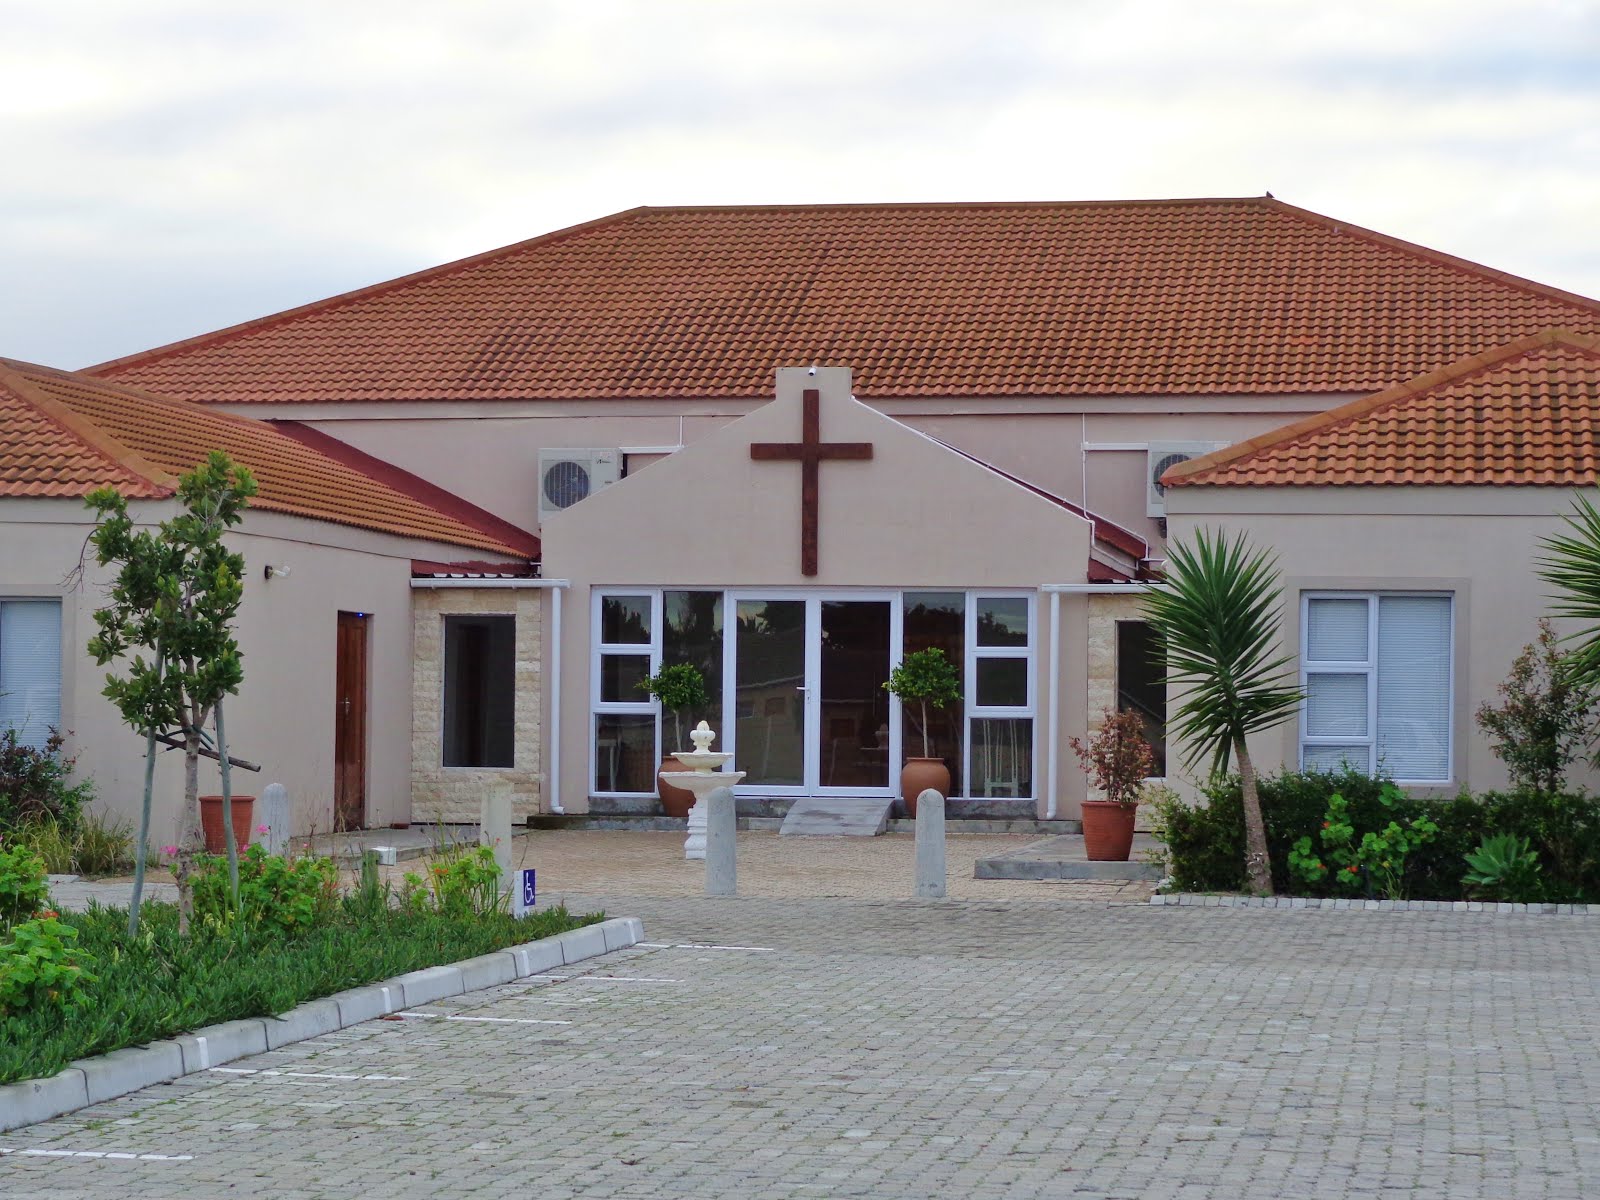 Coastlands Community Church